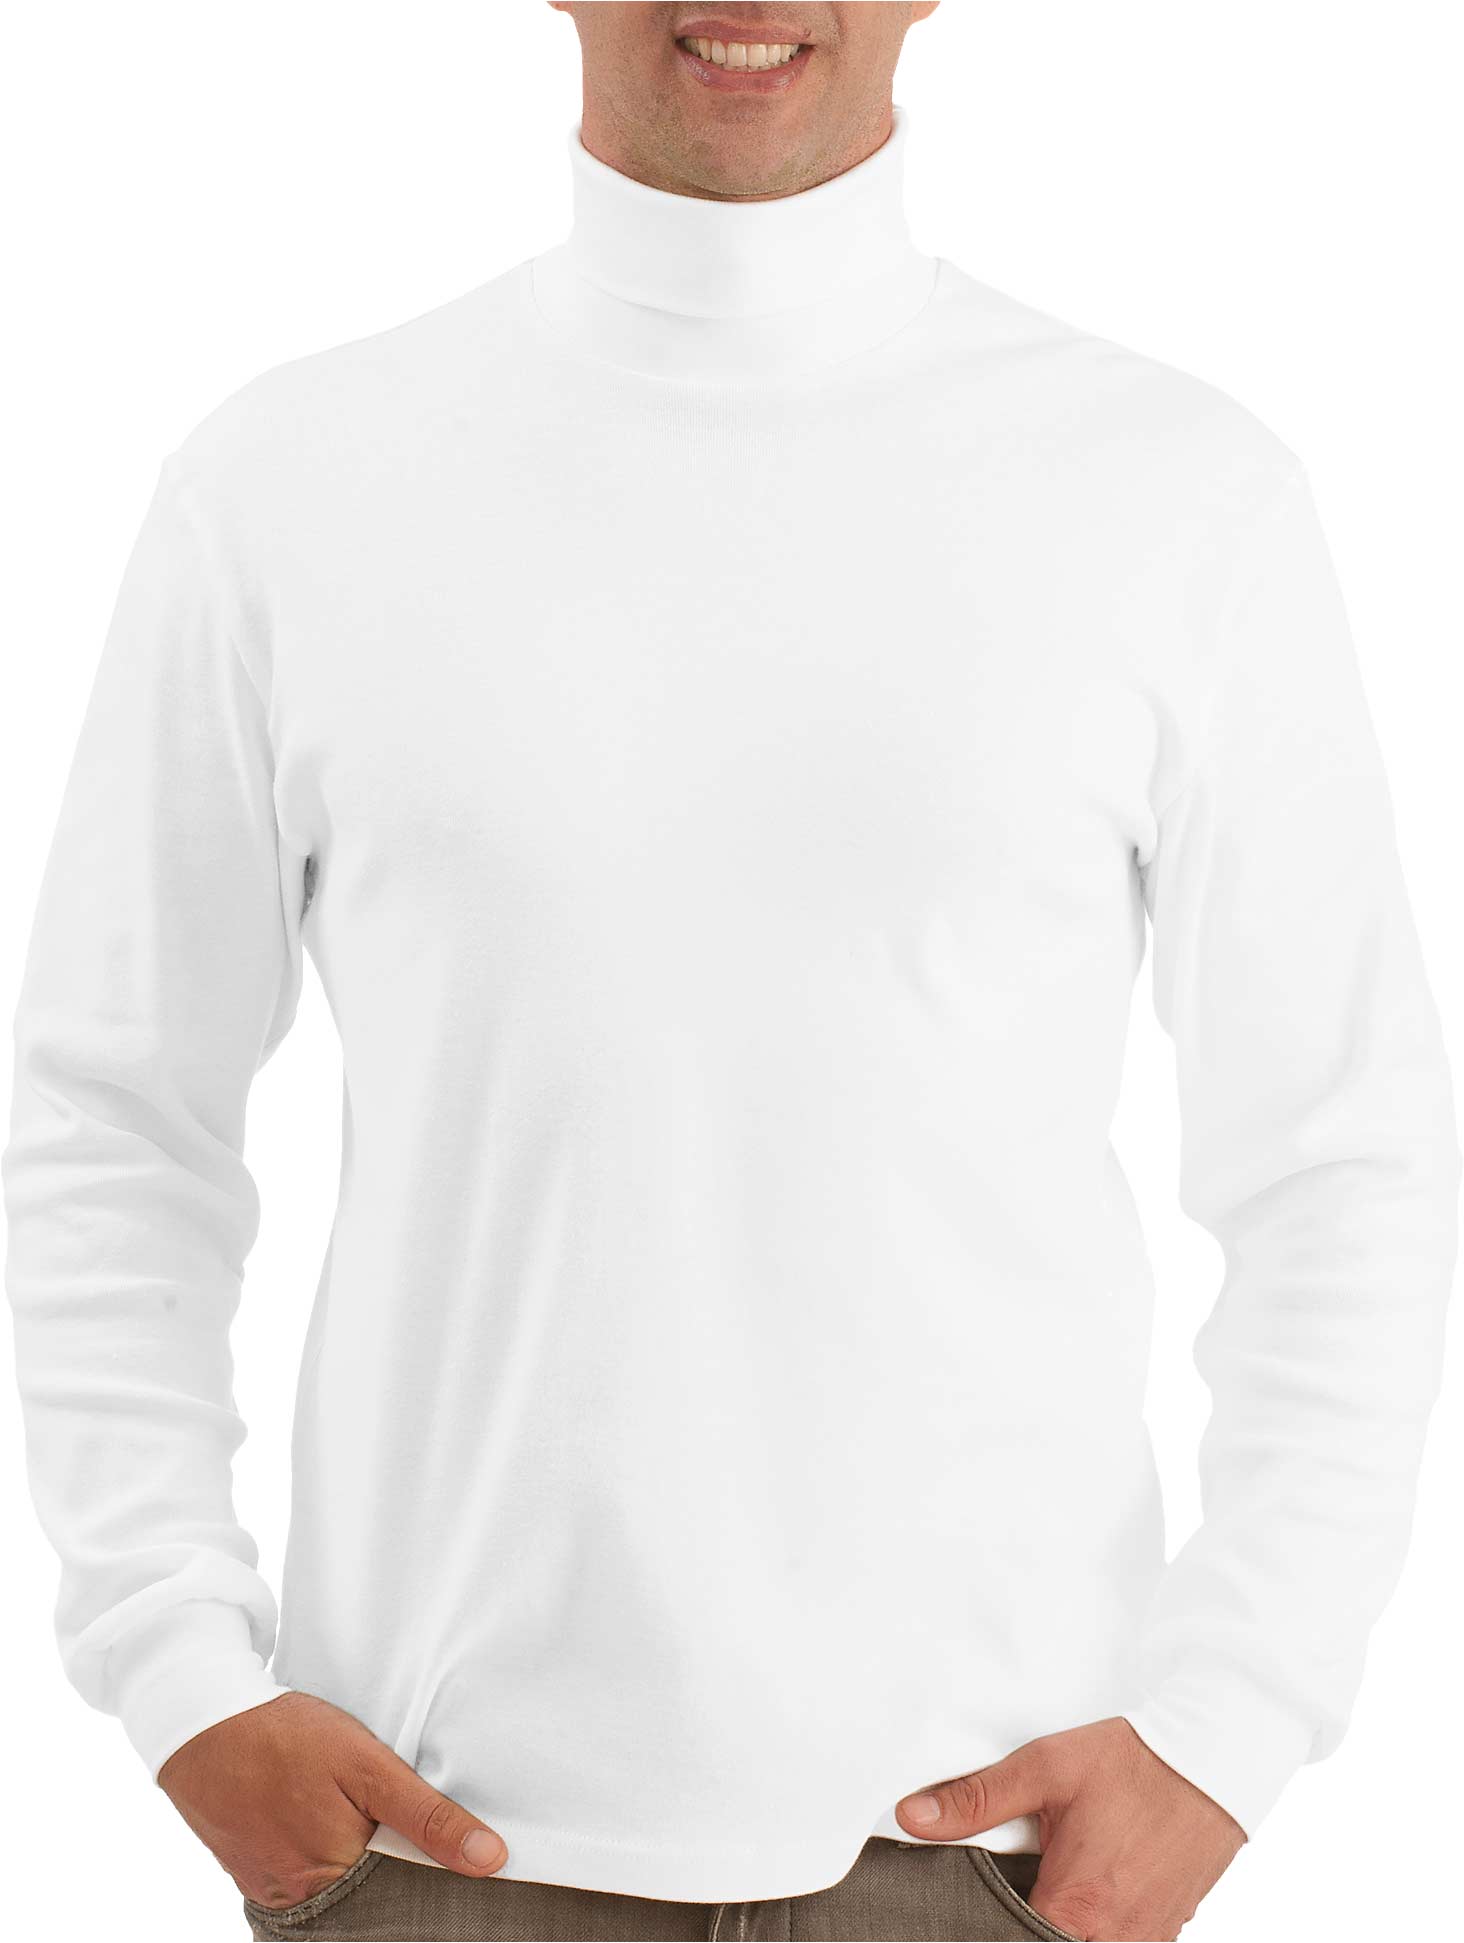 Rollkragen Shirt weiss - 100% Baumwolle für Herren - Trigema | Rollkragenshirts